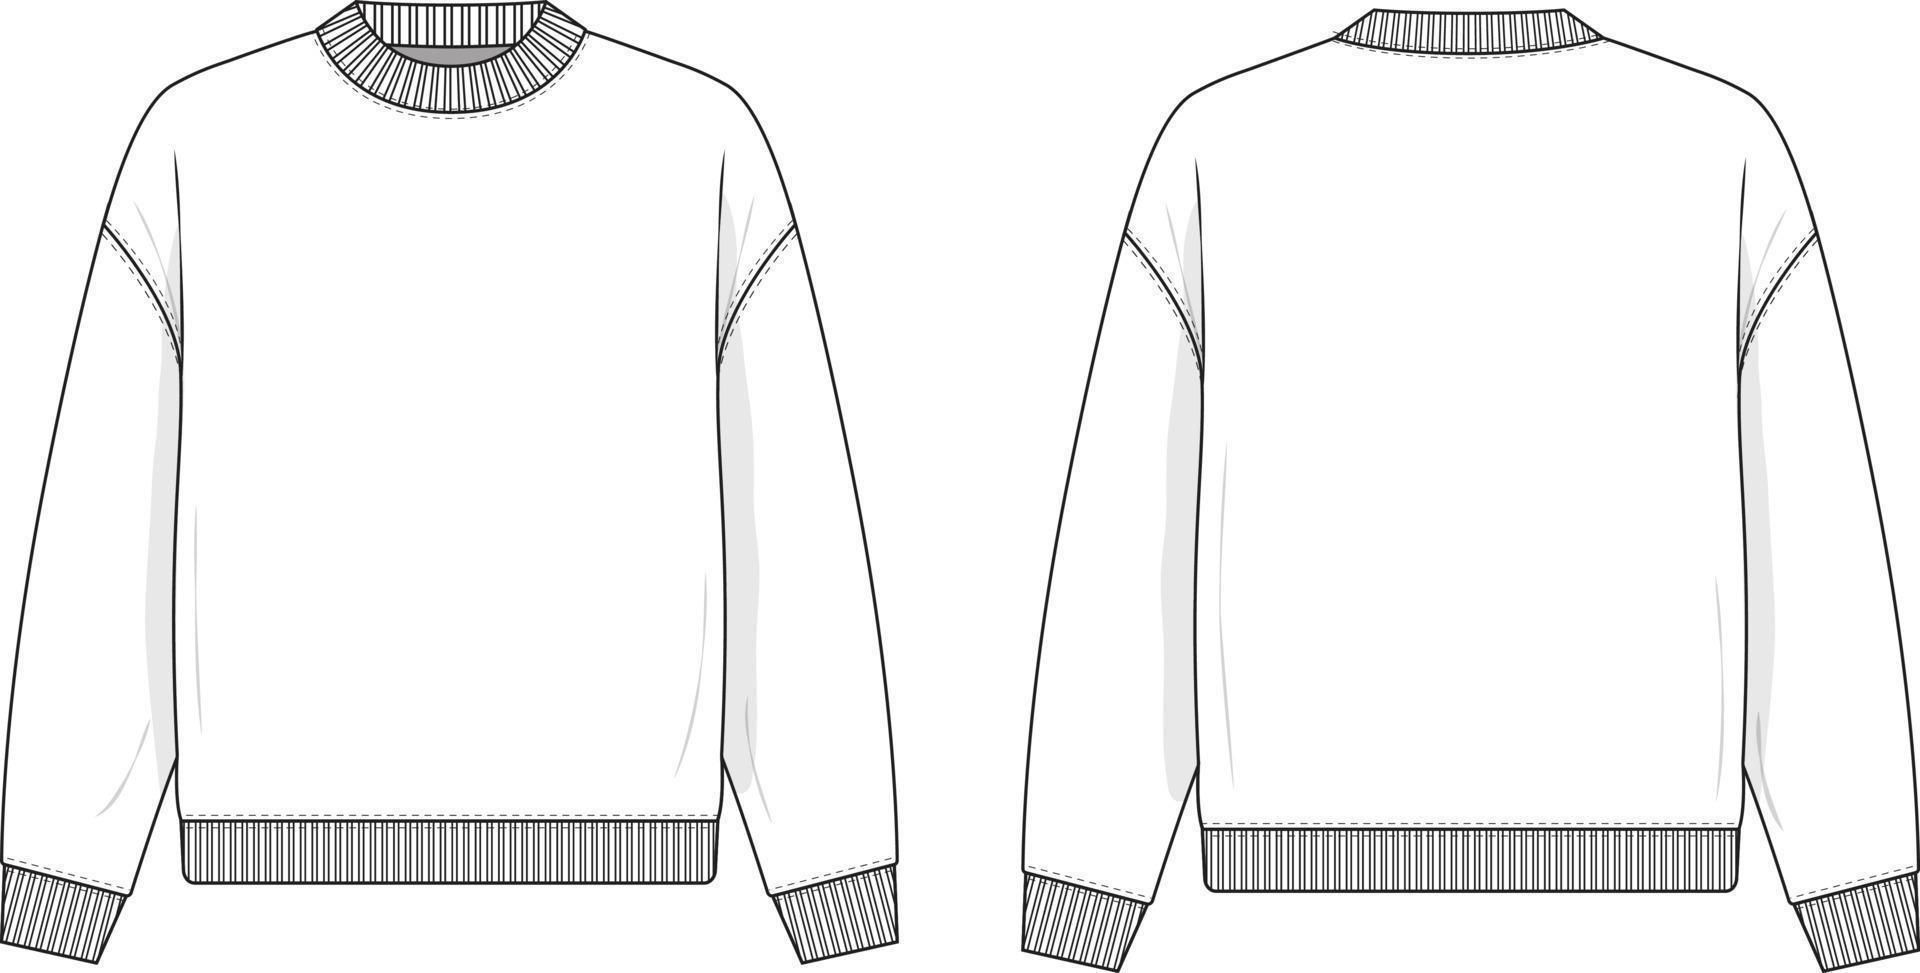 ronde hals trui platte technische tekening illustratie mock-up sjabloon voor ontwerp en tech packs mannen of unisex fashion cad streetwear vrouwen. vector